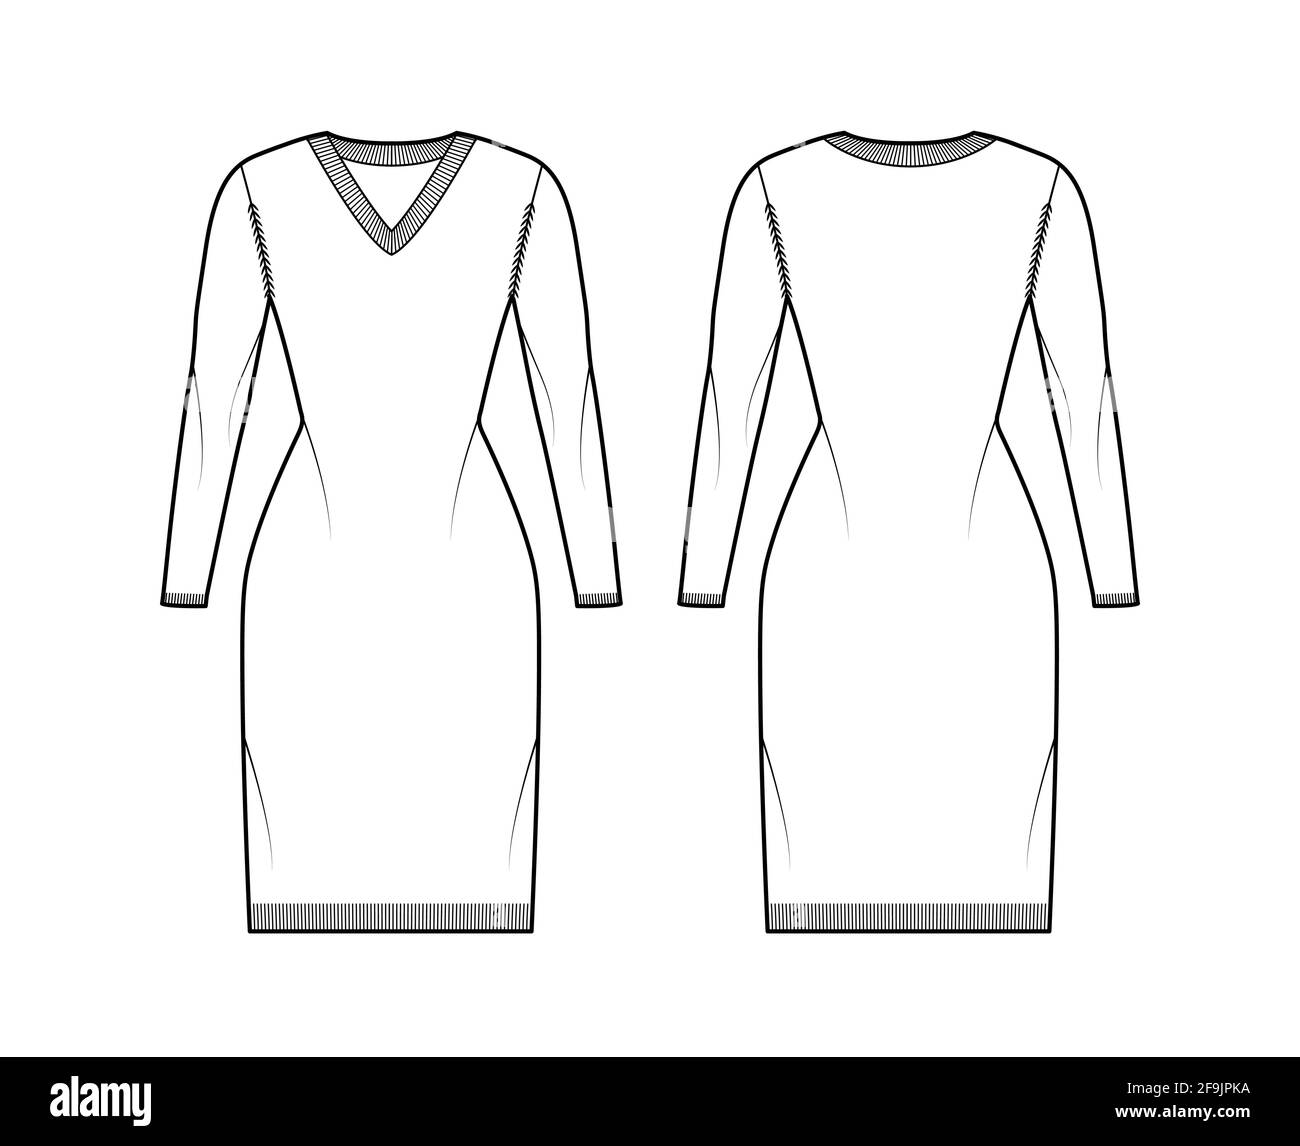 Kleid mit V-Ausschnitt Pullover technische Mode-Illustration mit langen Ärmeln, Slim Fit, knielang, Rippenstrick. Flatpullover-Bekleidung vorne, hinten, in weißer Farbgebung. Frauen, Männer Unisex-CAD-Modell Stock Vektor